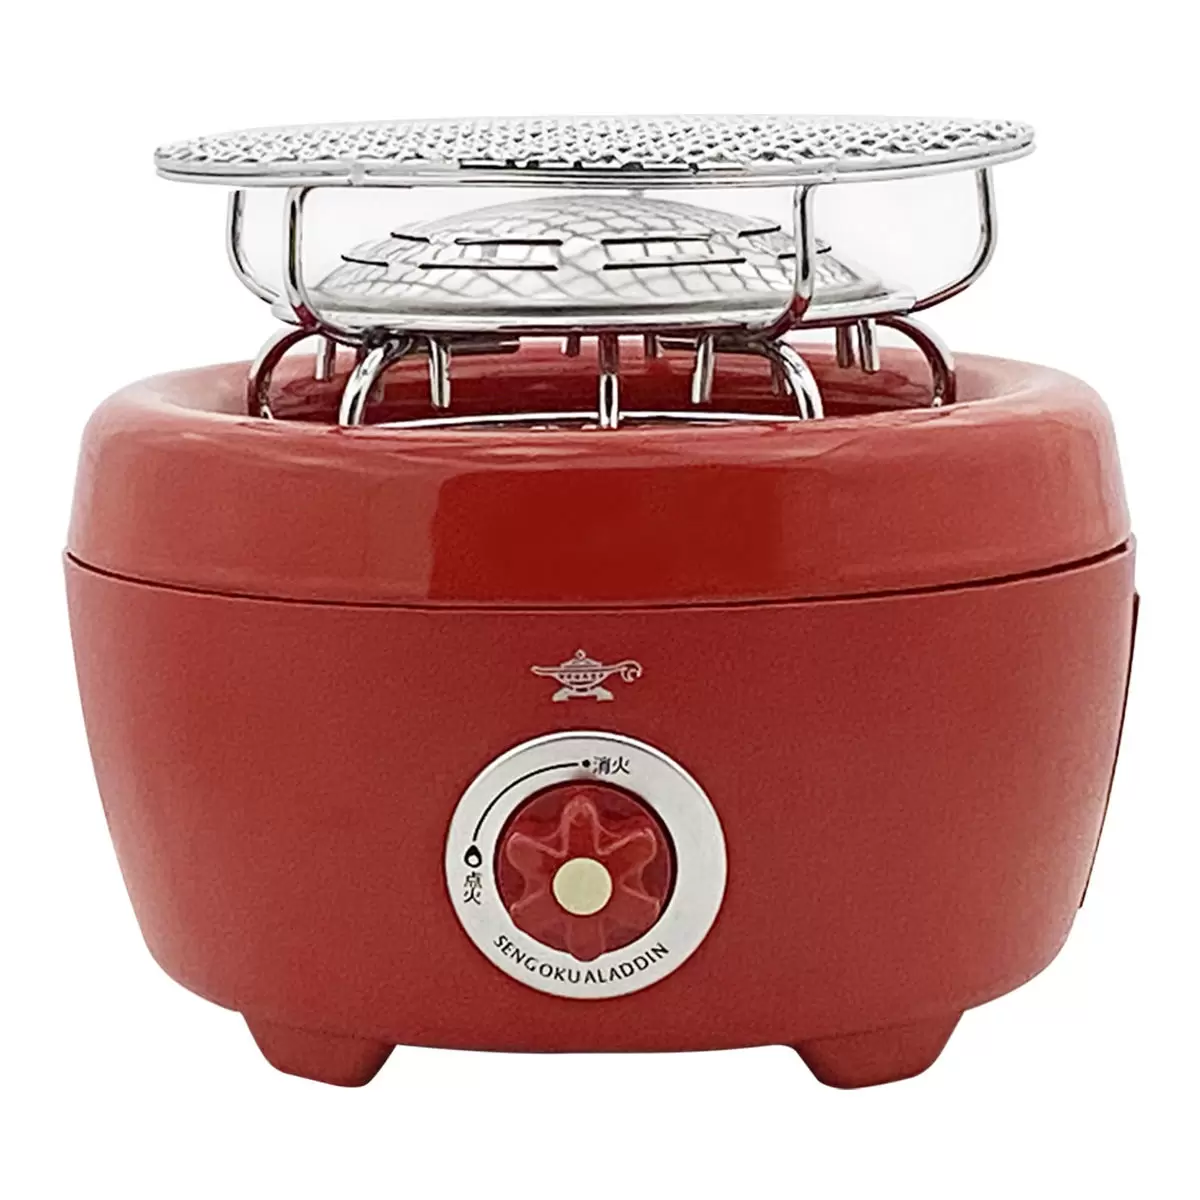 千石阿拉丁 2.8kW 可攜式卡式燒烤爐 SAG-HB01R 紅色